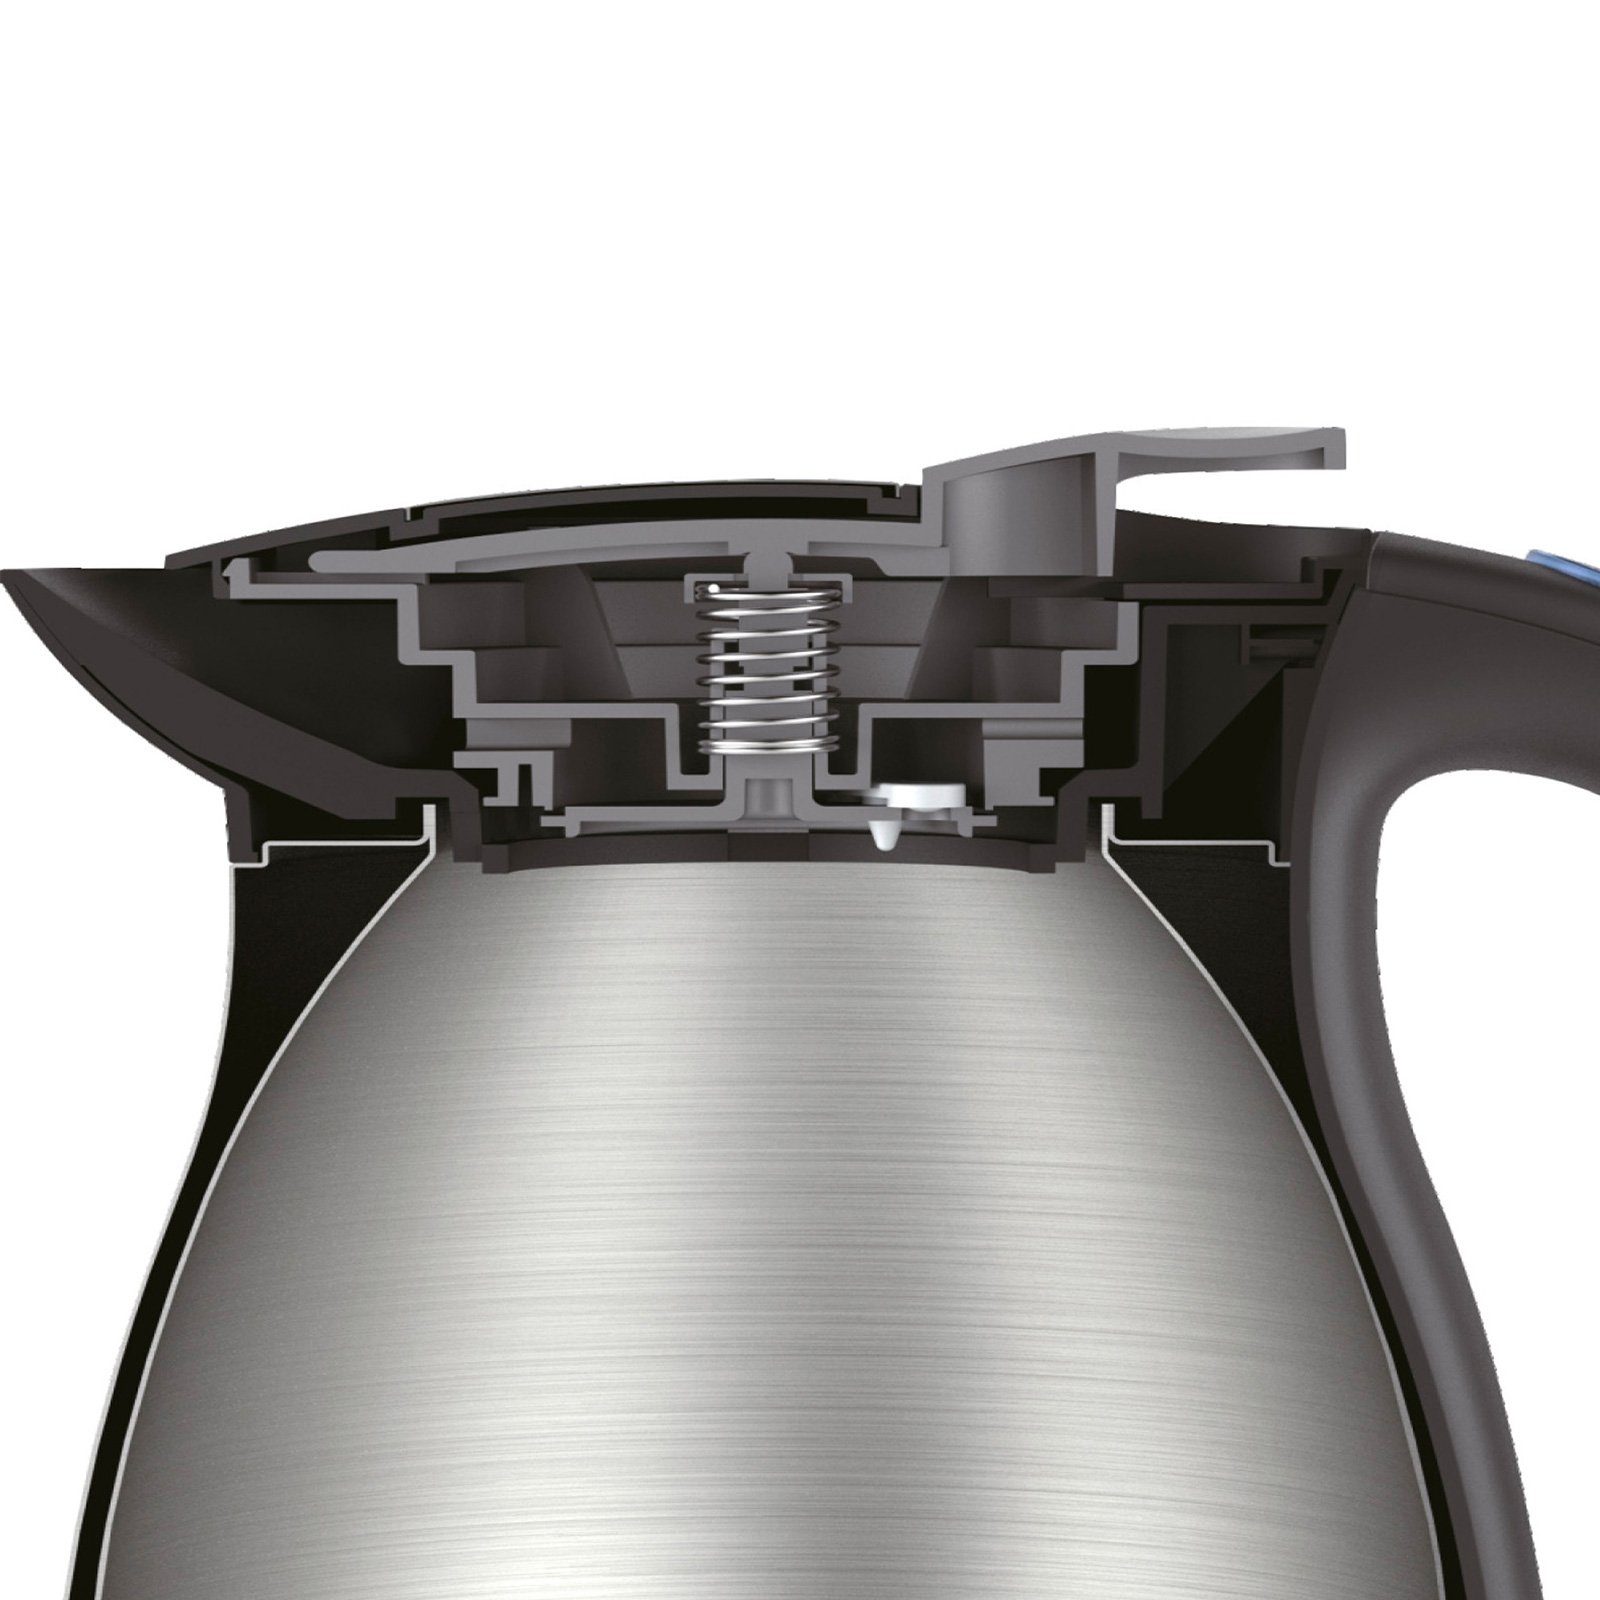 Gastroback Design Thermo, l, Advanced 1 2200 W 42426 Wasserkocher